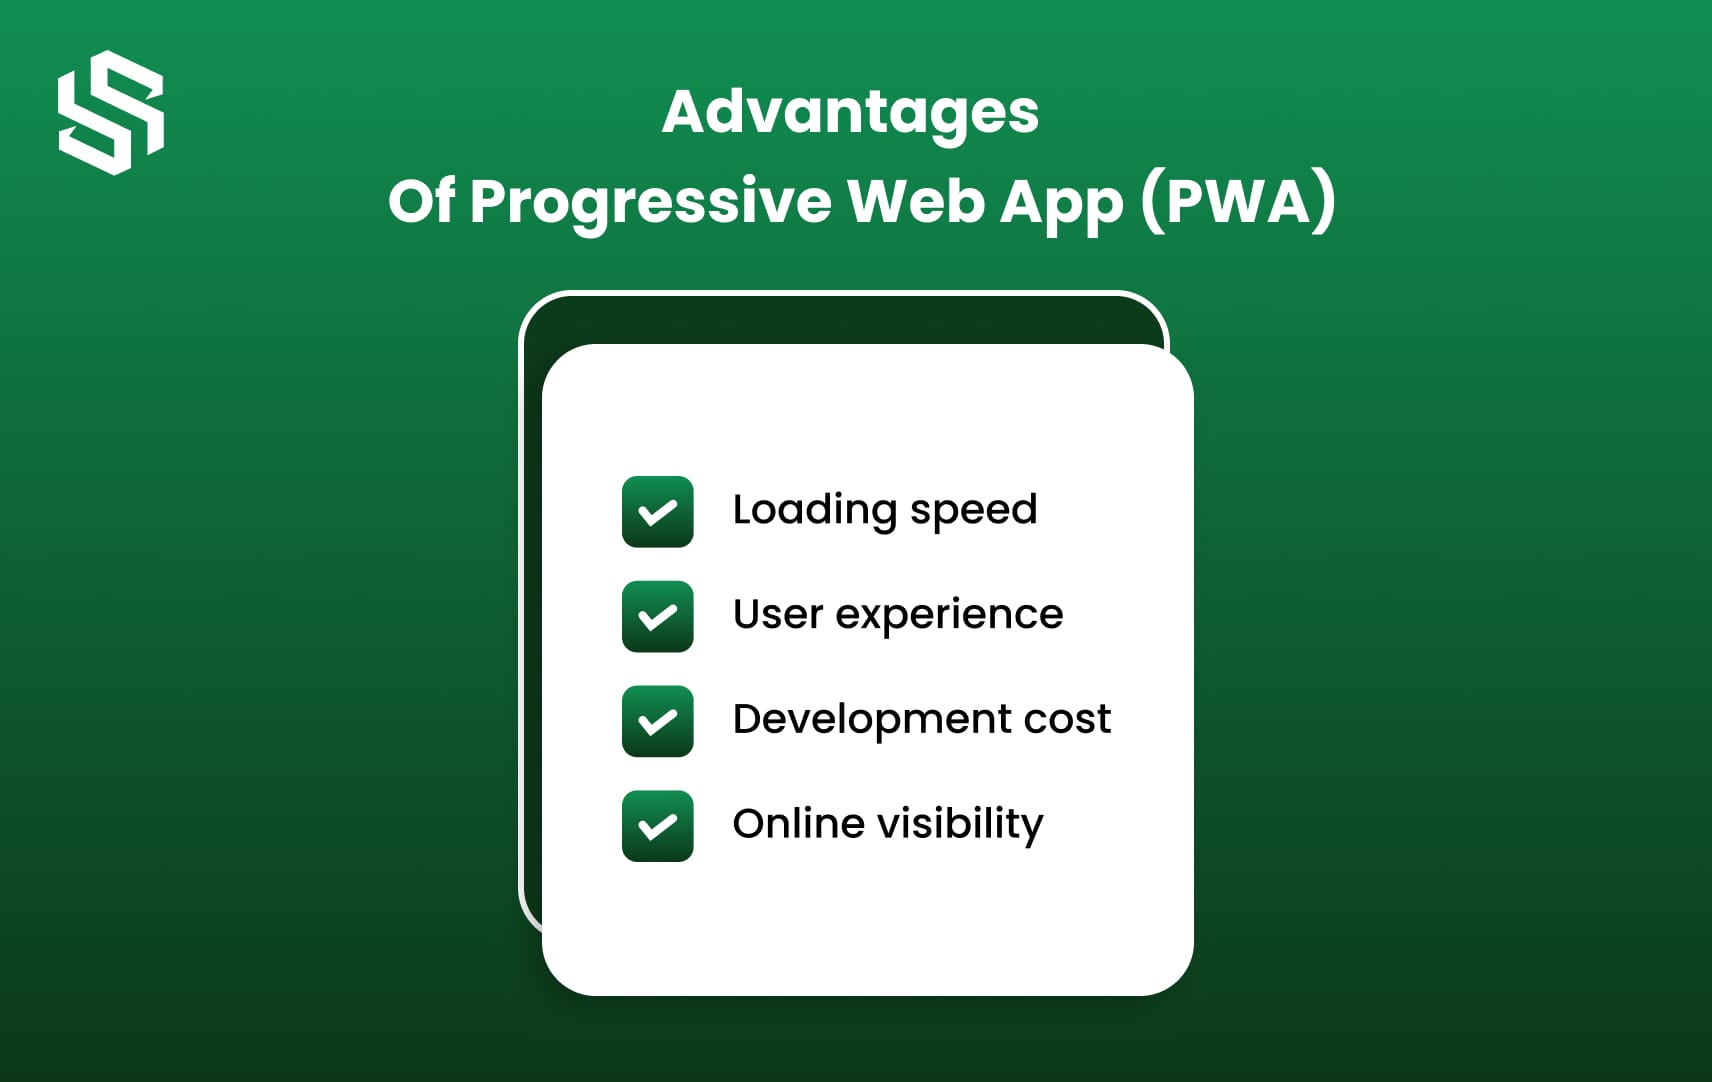 Advantages of a Progressive Web App (PWA)